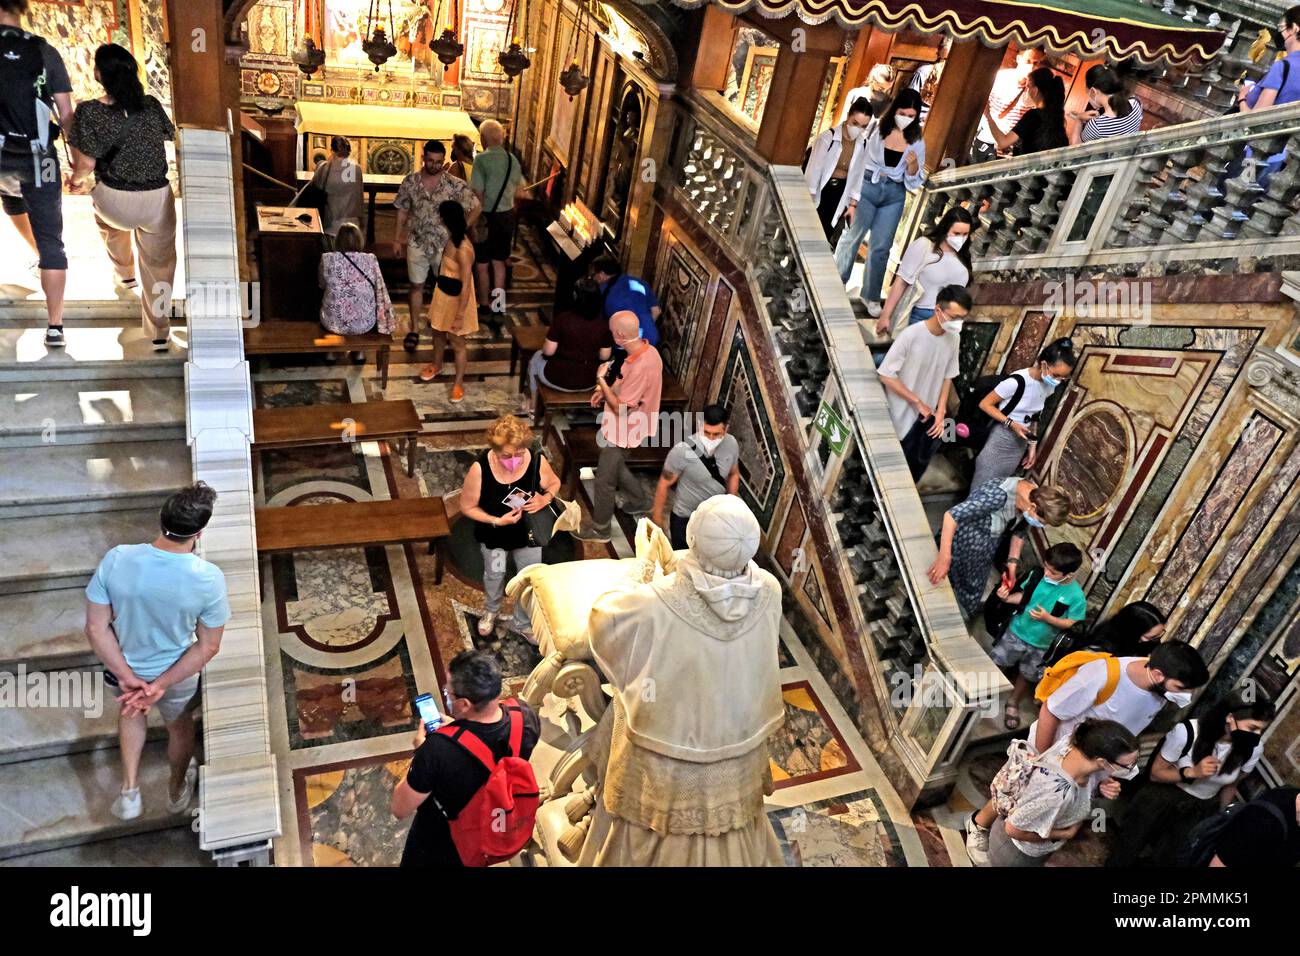 Tourists in Santa Maria Maggiore Basilica in Rome Italy Stock Photo